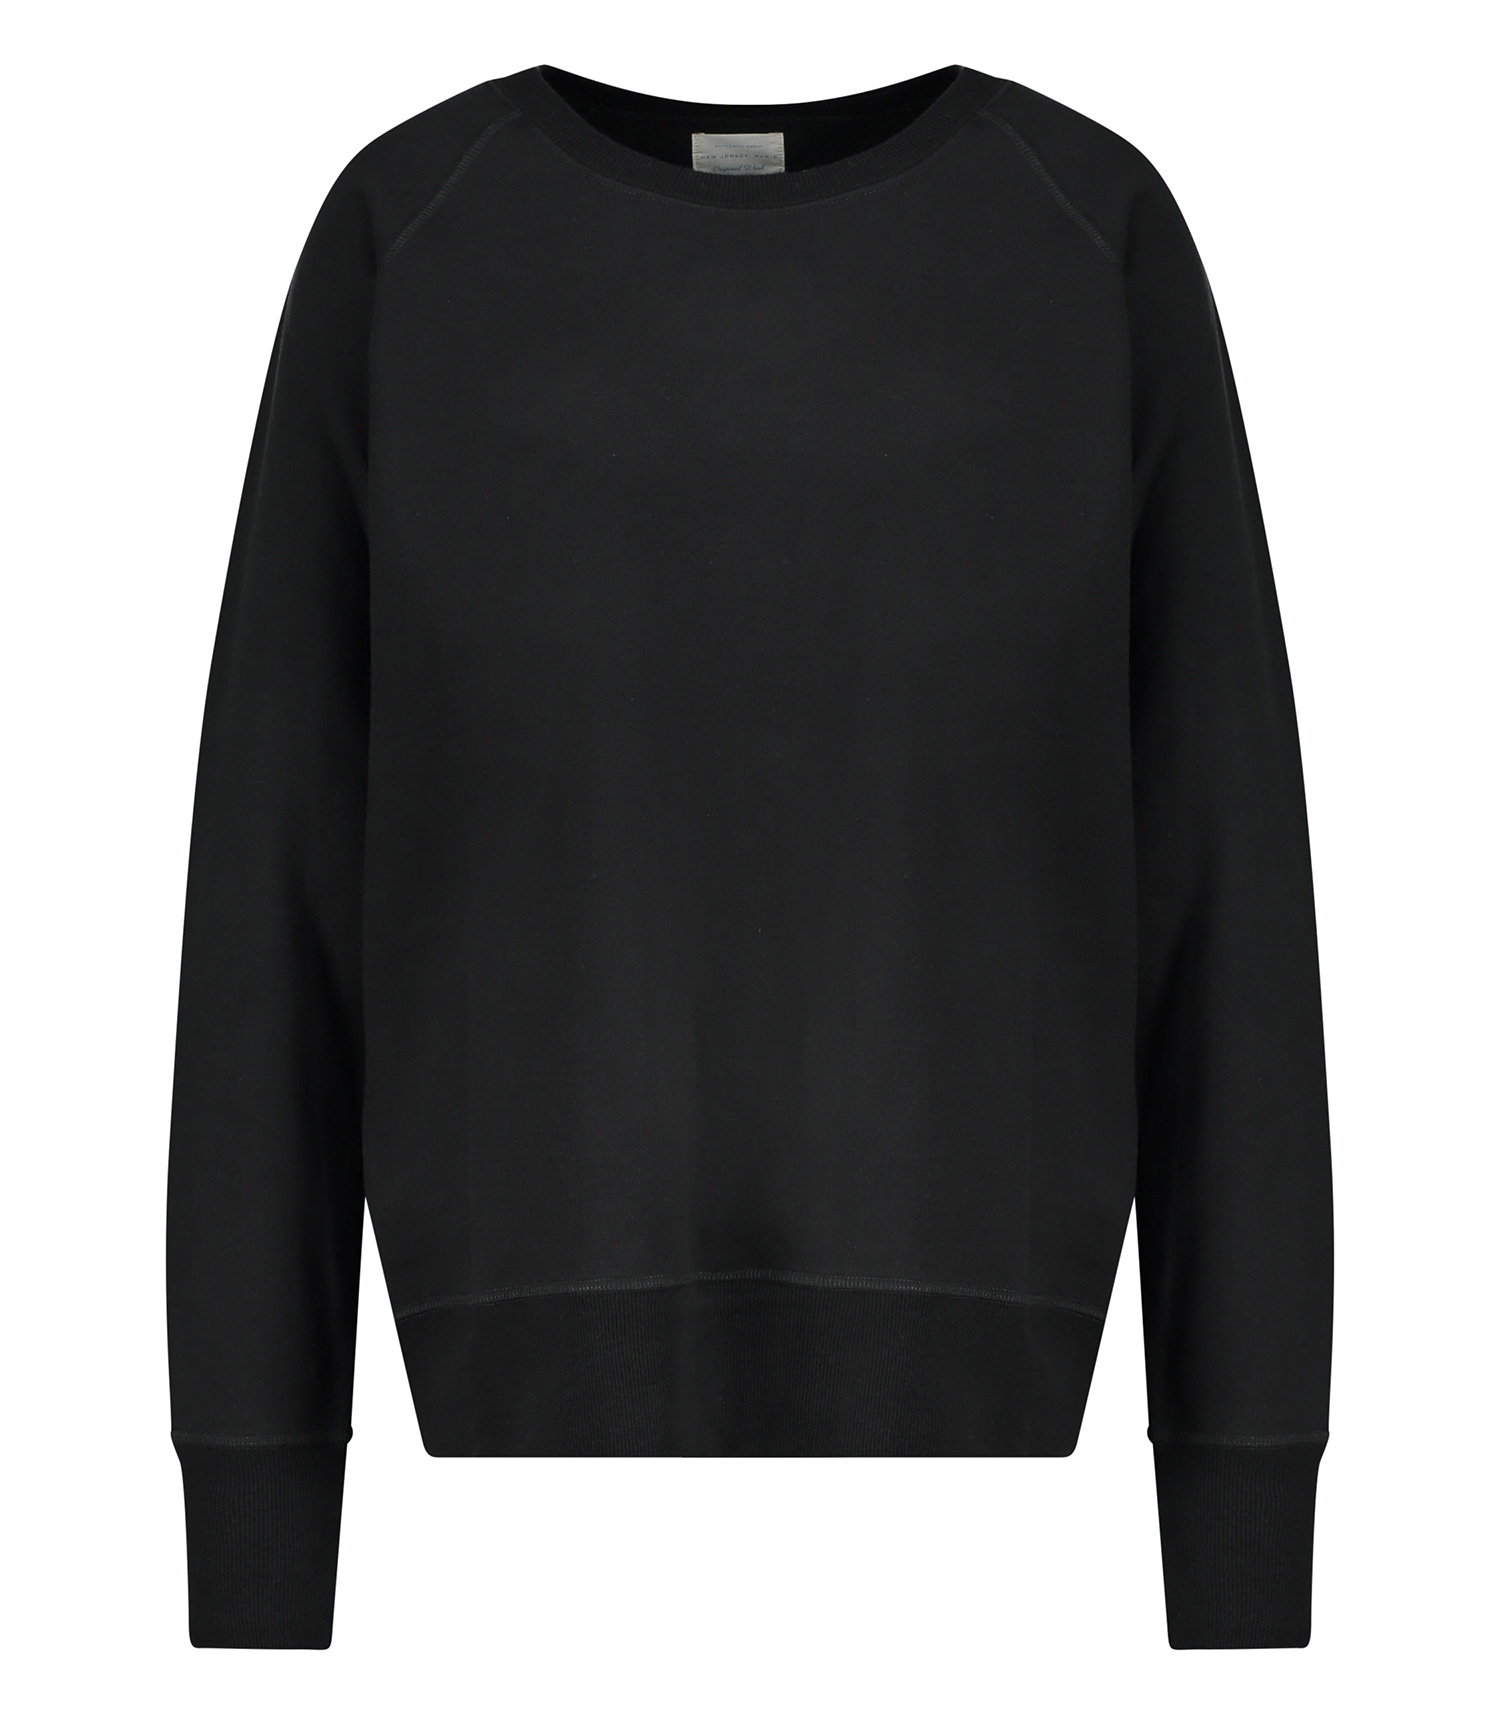 Sweatshirt pour Femme Pull Sweat Shirt Basic Manches Raglan en Coton uni Basique 